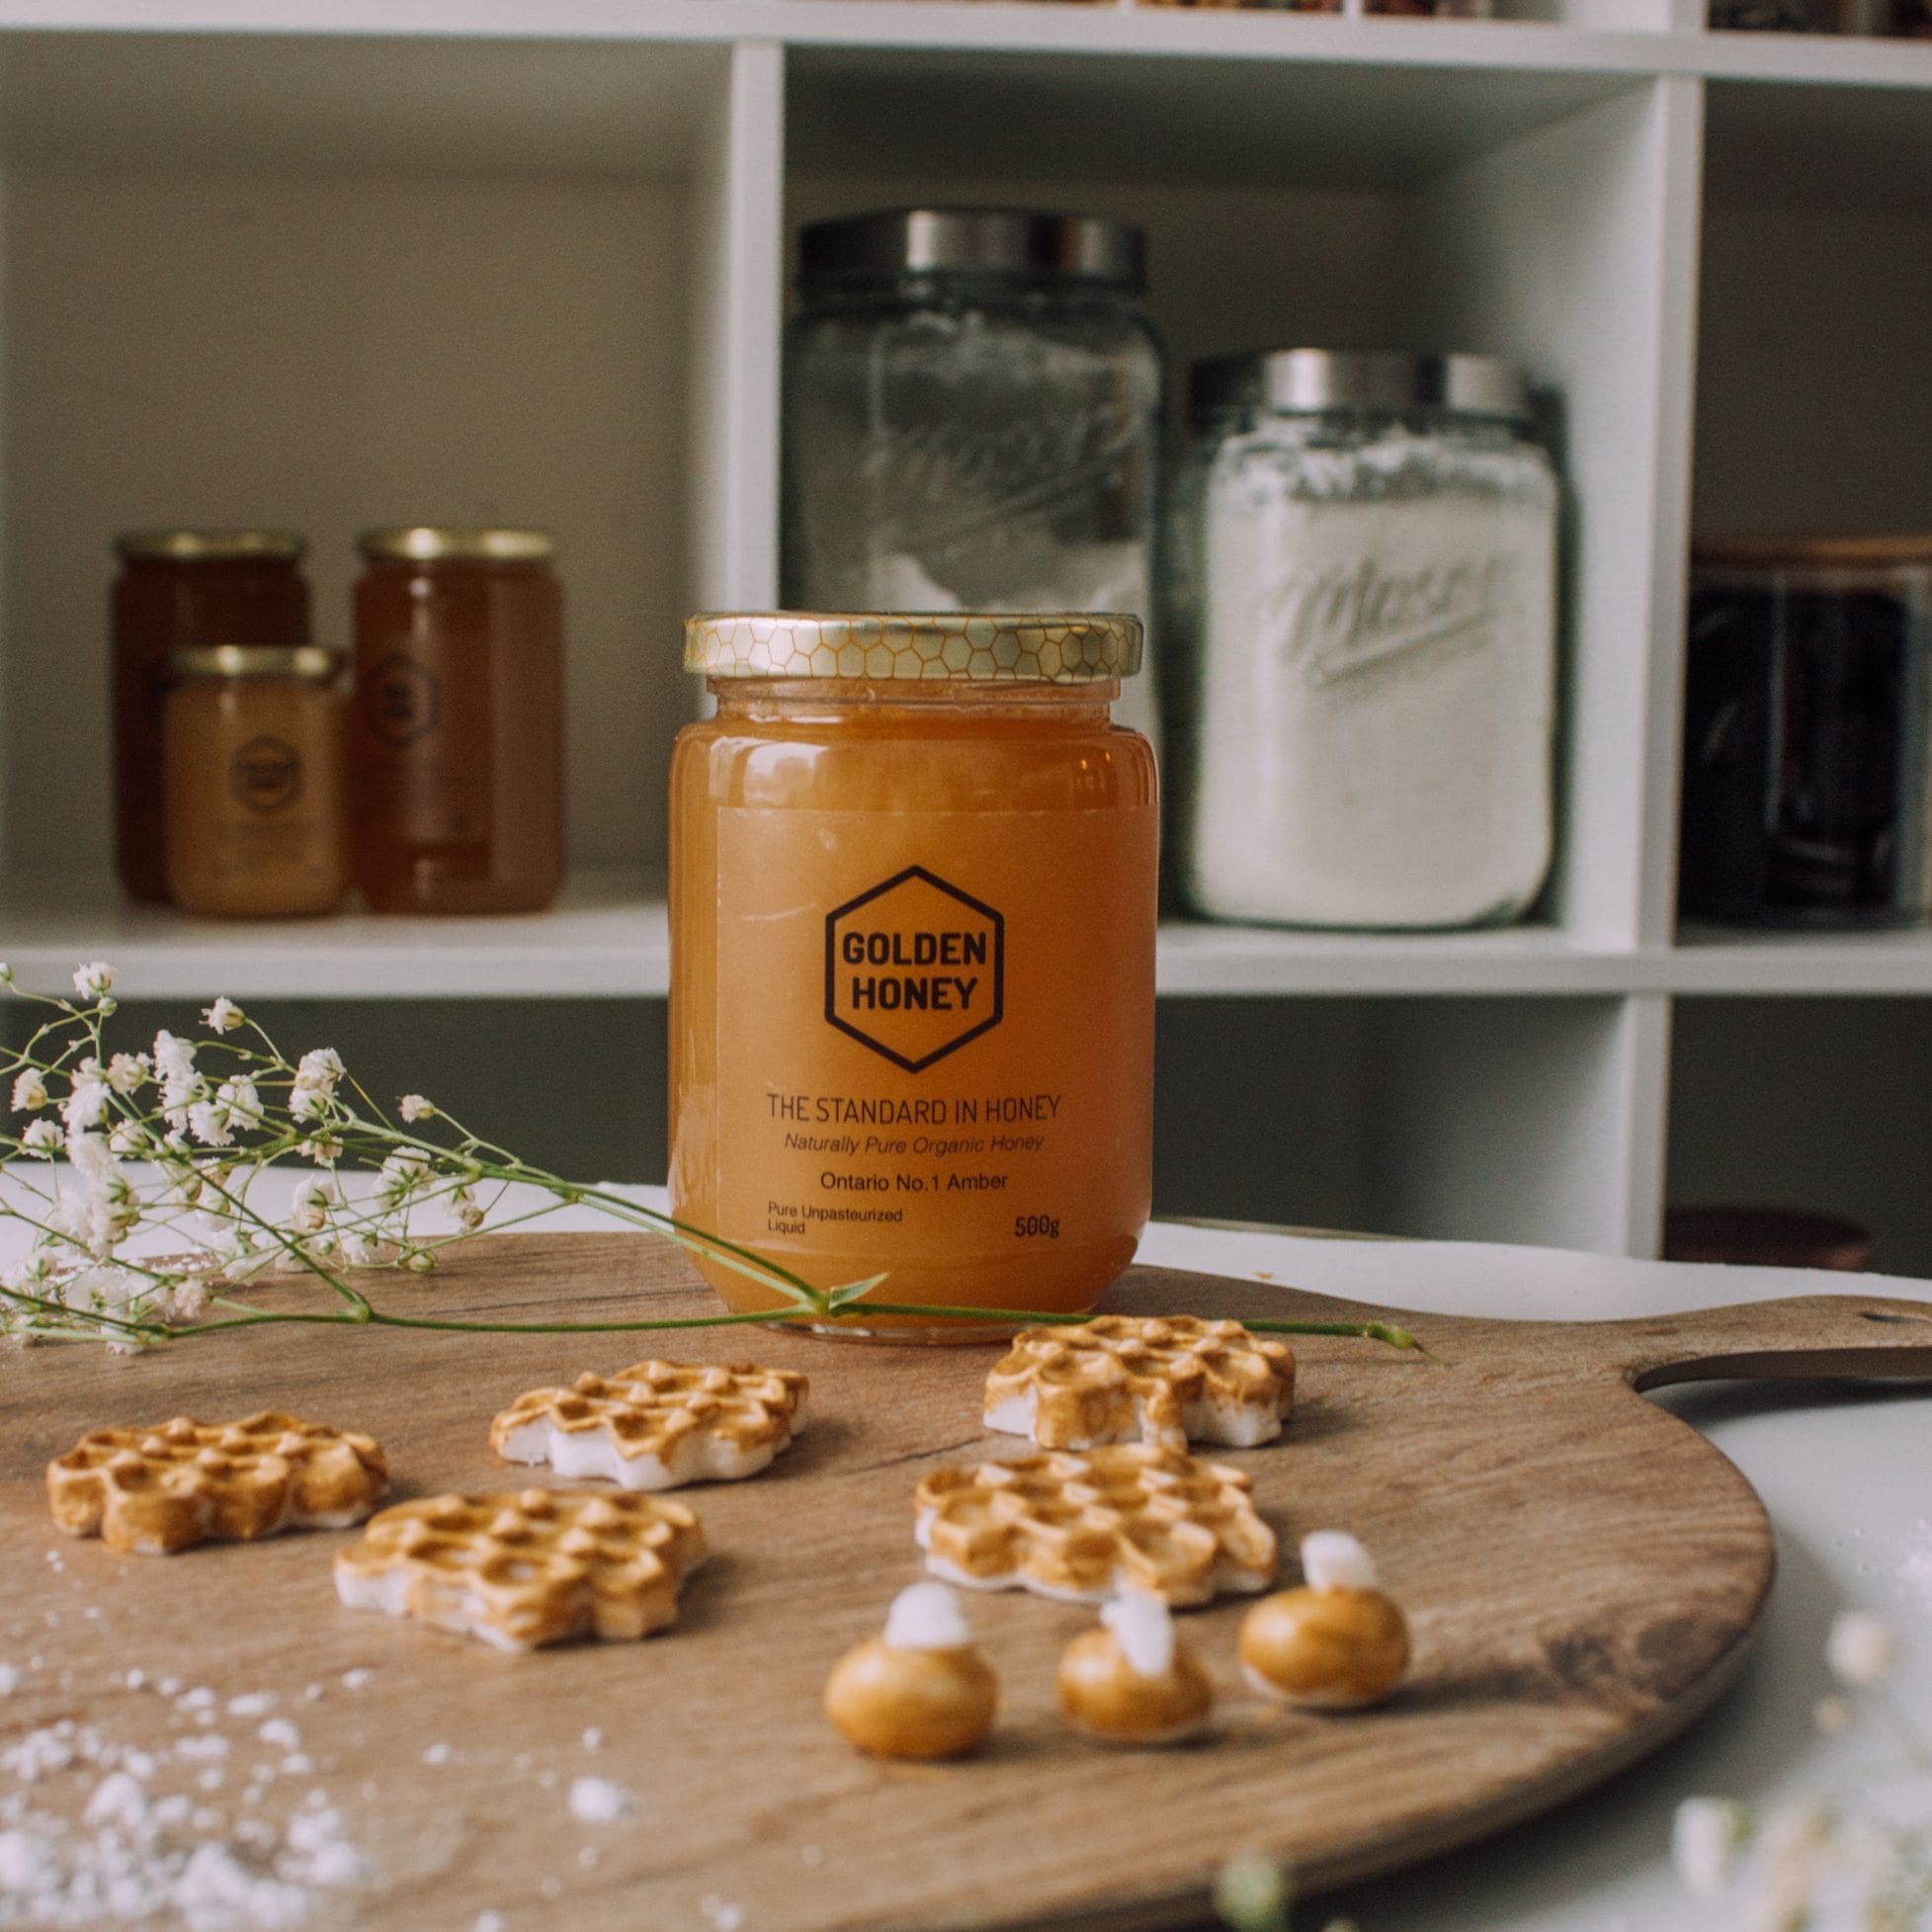 Etiquettes de bouteille de miel, pot en verre de miel